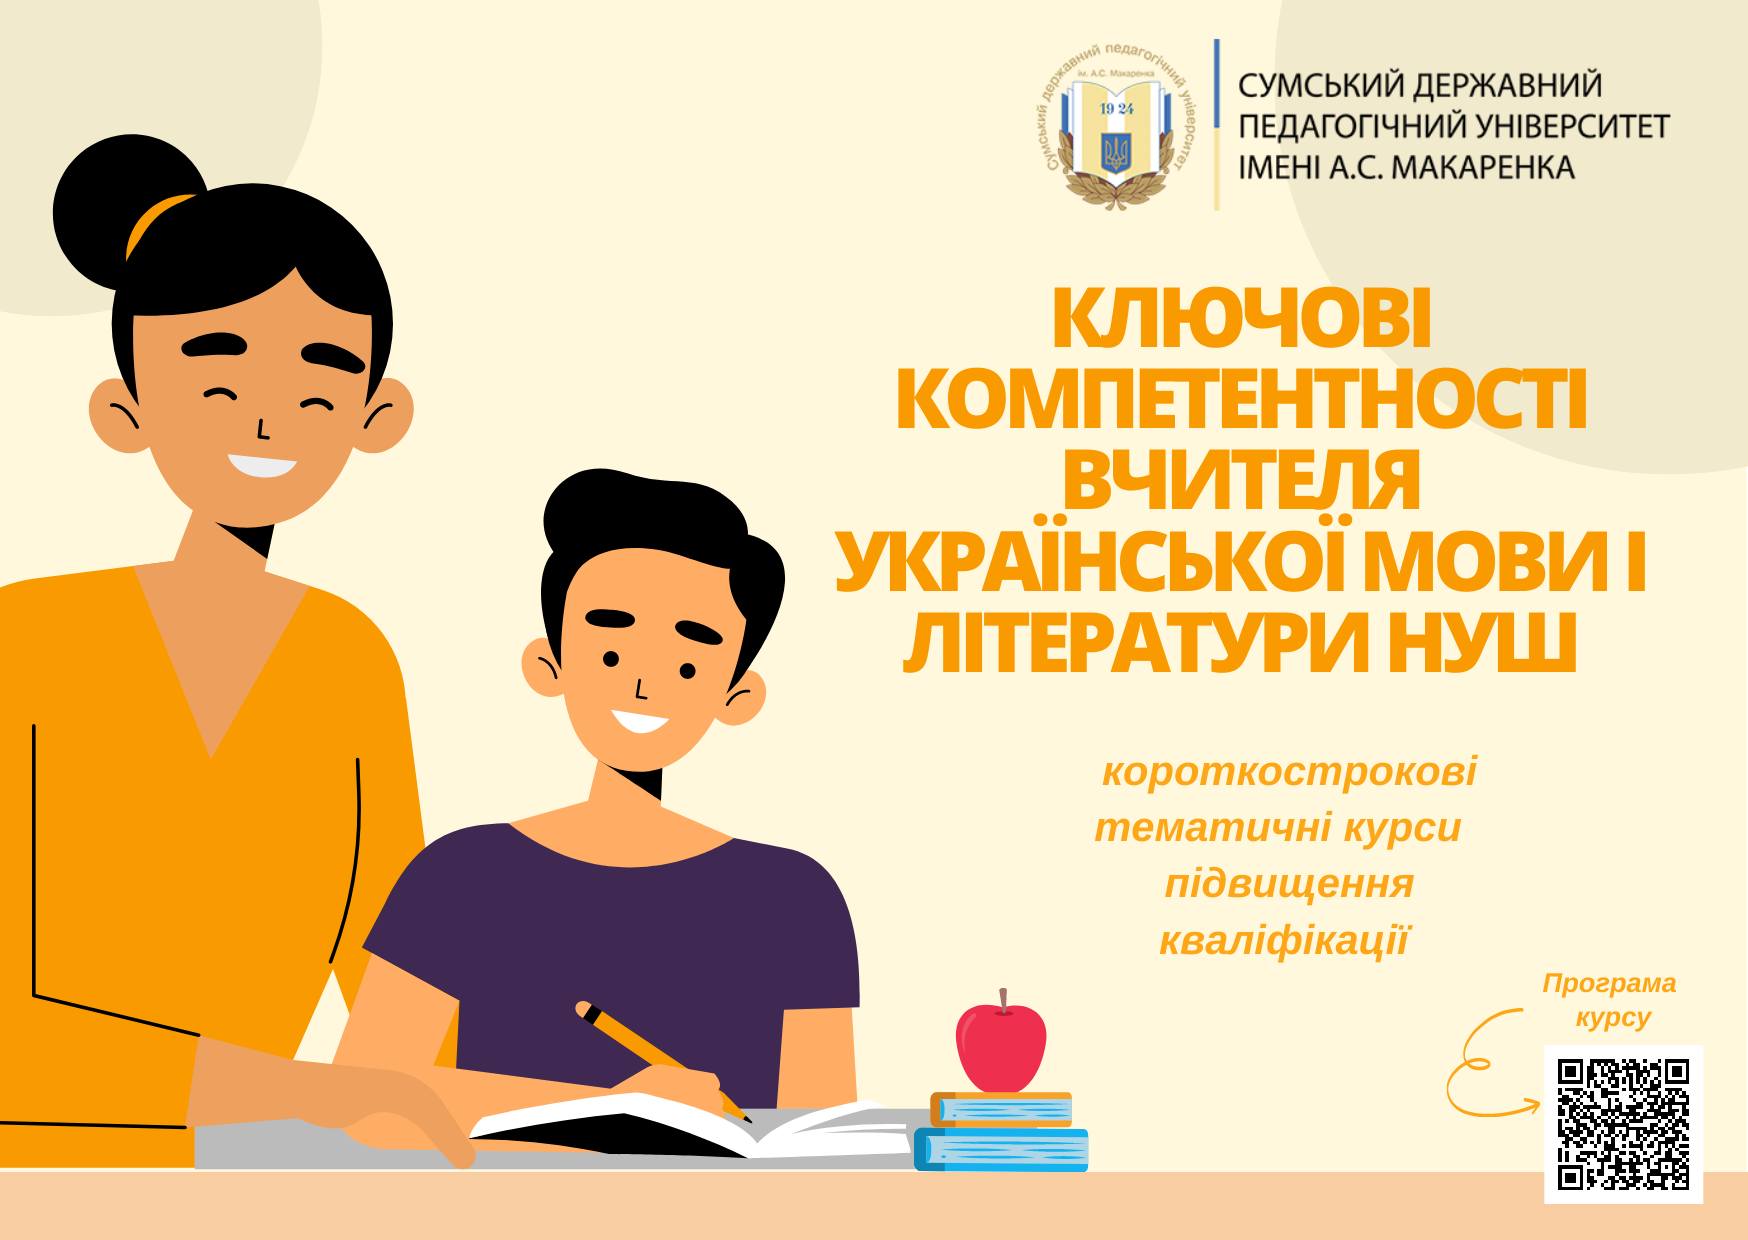 Курси підвищення кваліфікації «Ключові компетентності вчителя української мови і літератури НУШ»